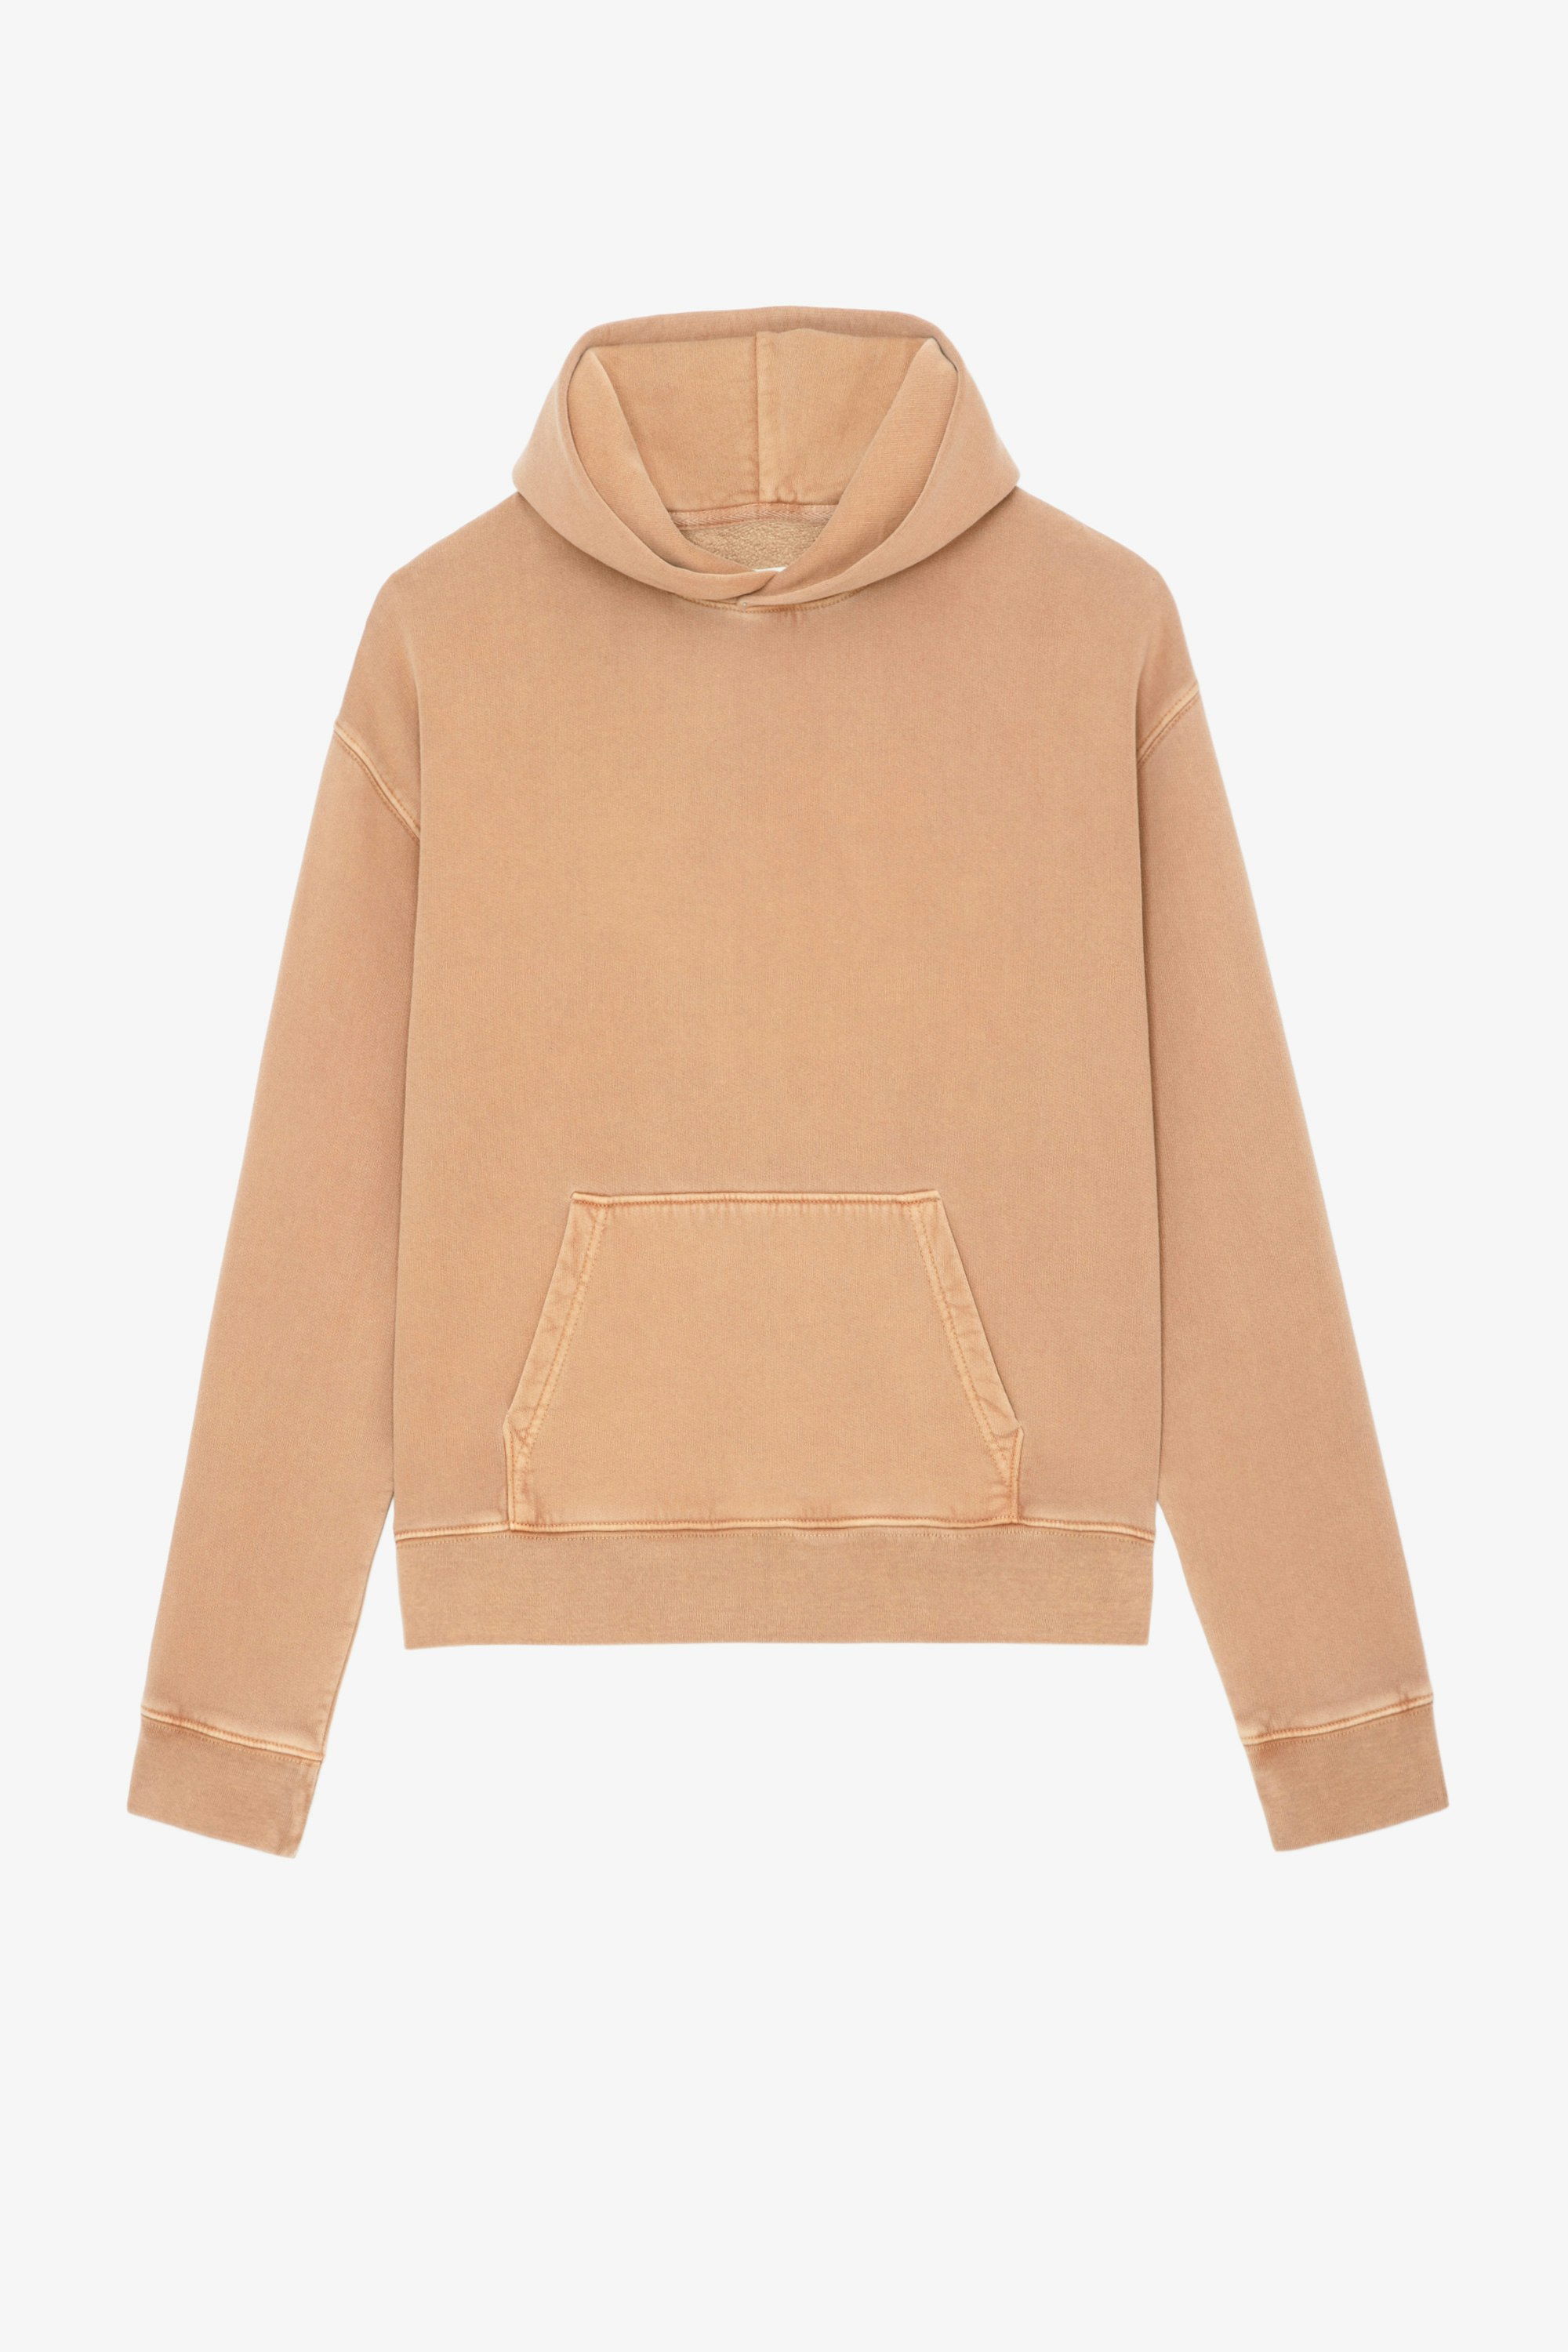 Mona Glitter Sweatshirt Women’s Glitter cognac cotton hoodie with “Je m'en fous” slogan on the back